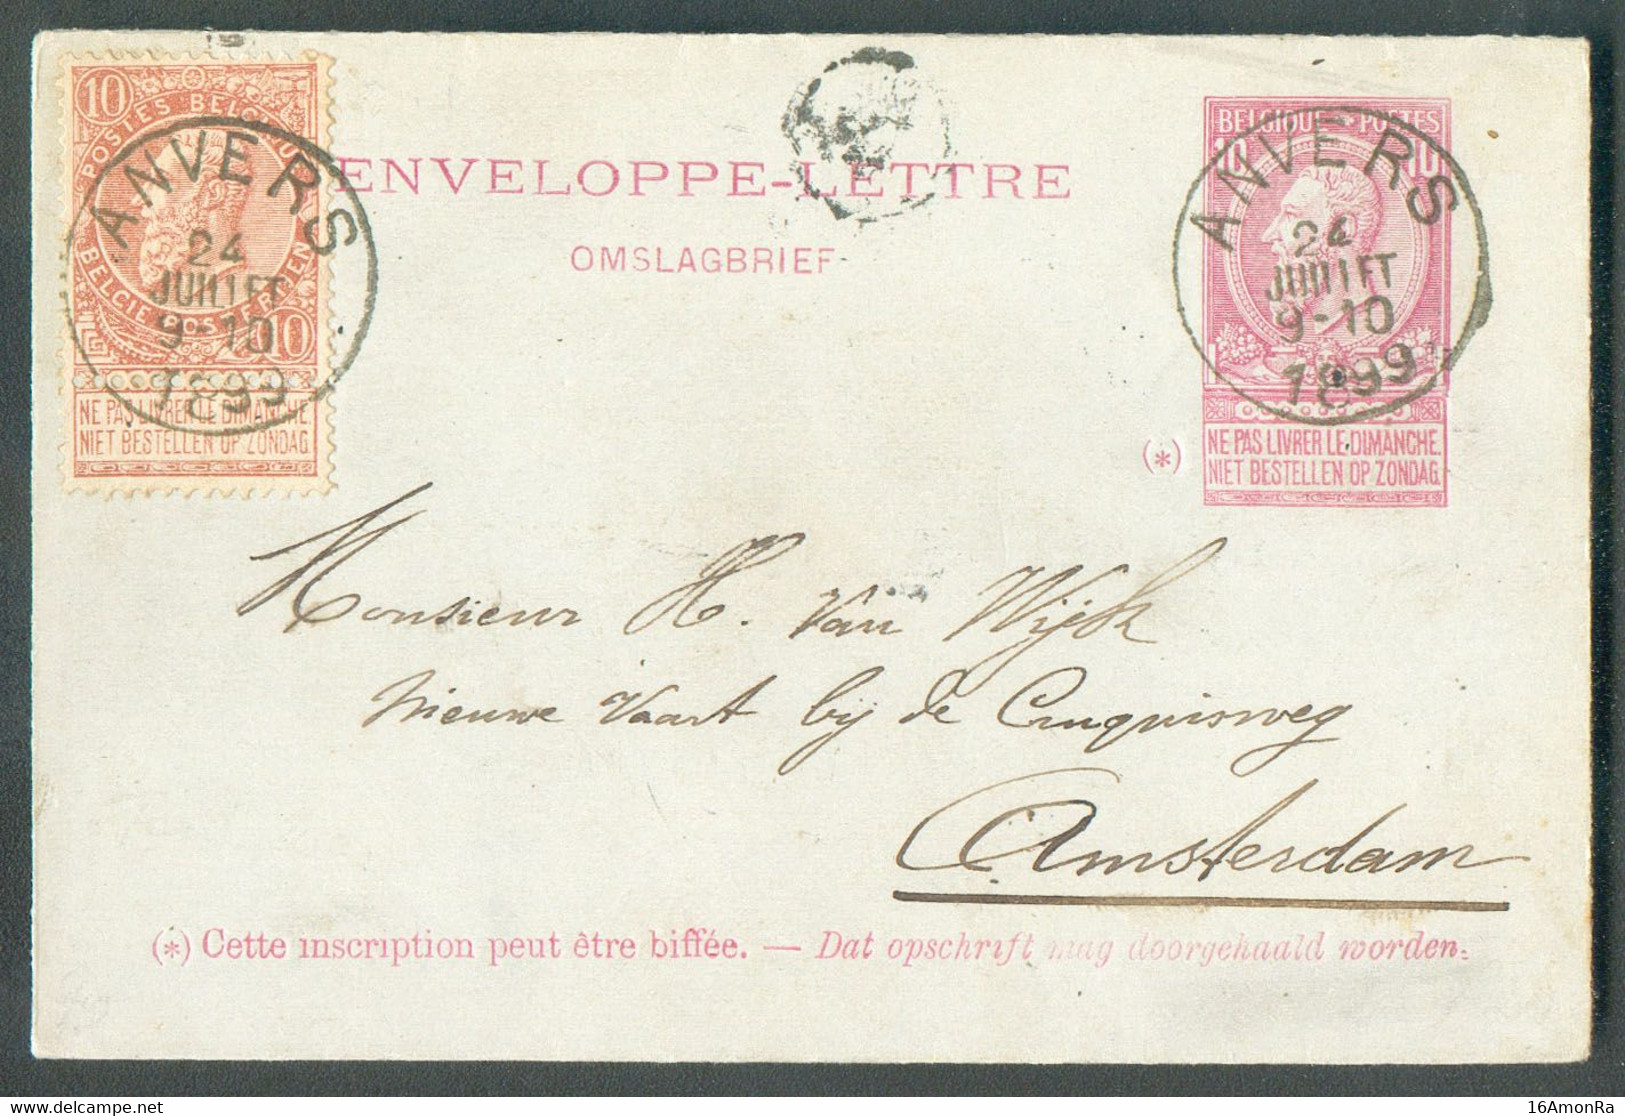 E.P. Enveloppe-lettre 10c. Fine Barbe + Tp 10 Centimes Obl. Sc ANVERS Du 24 Juillet 1899 Vers Amsterdam - 20335 - Enveloppes-lettres